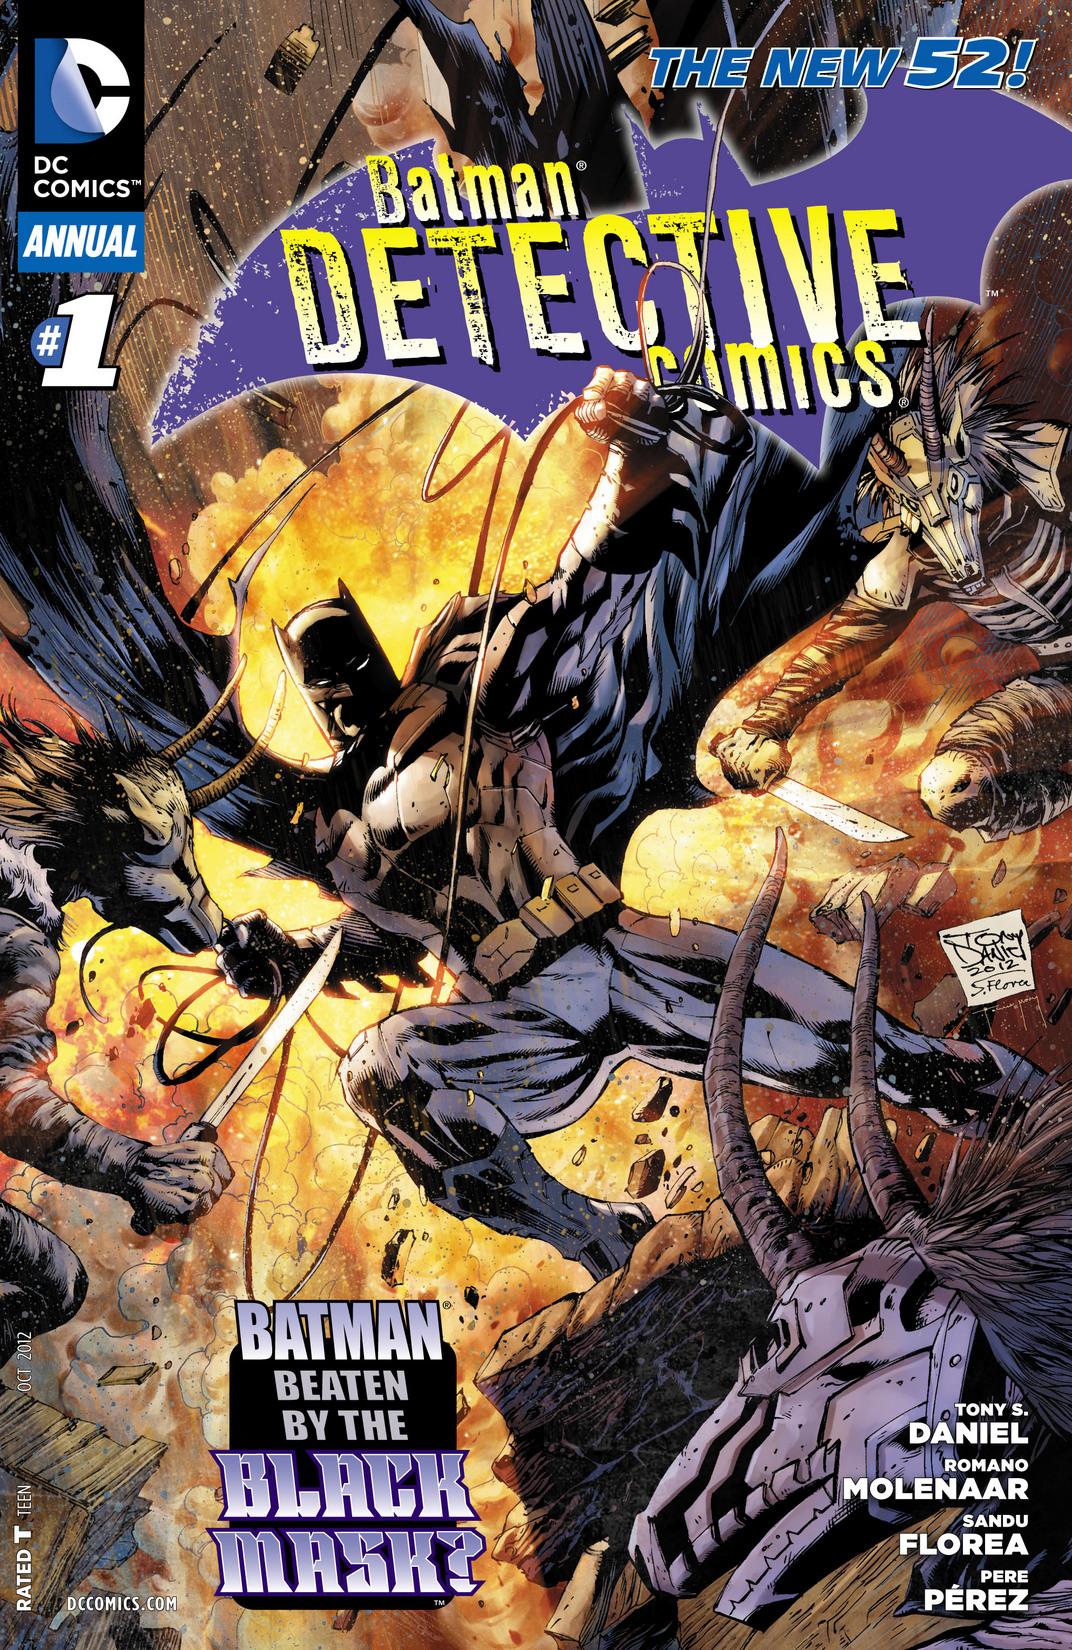 Detective Comics Vol. 2 #1